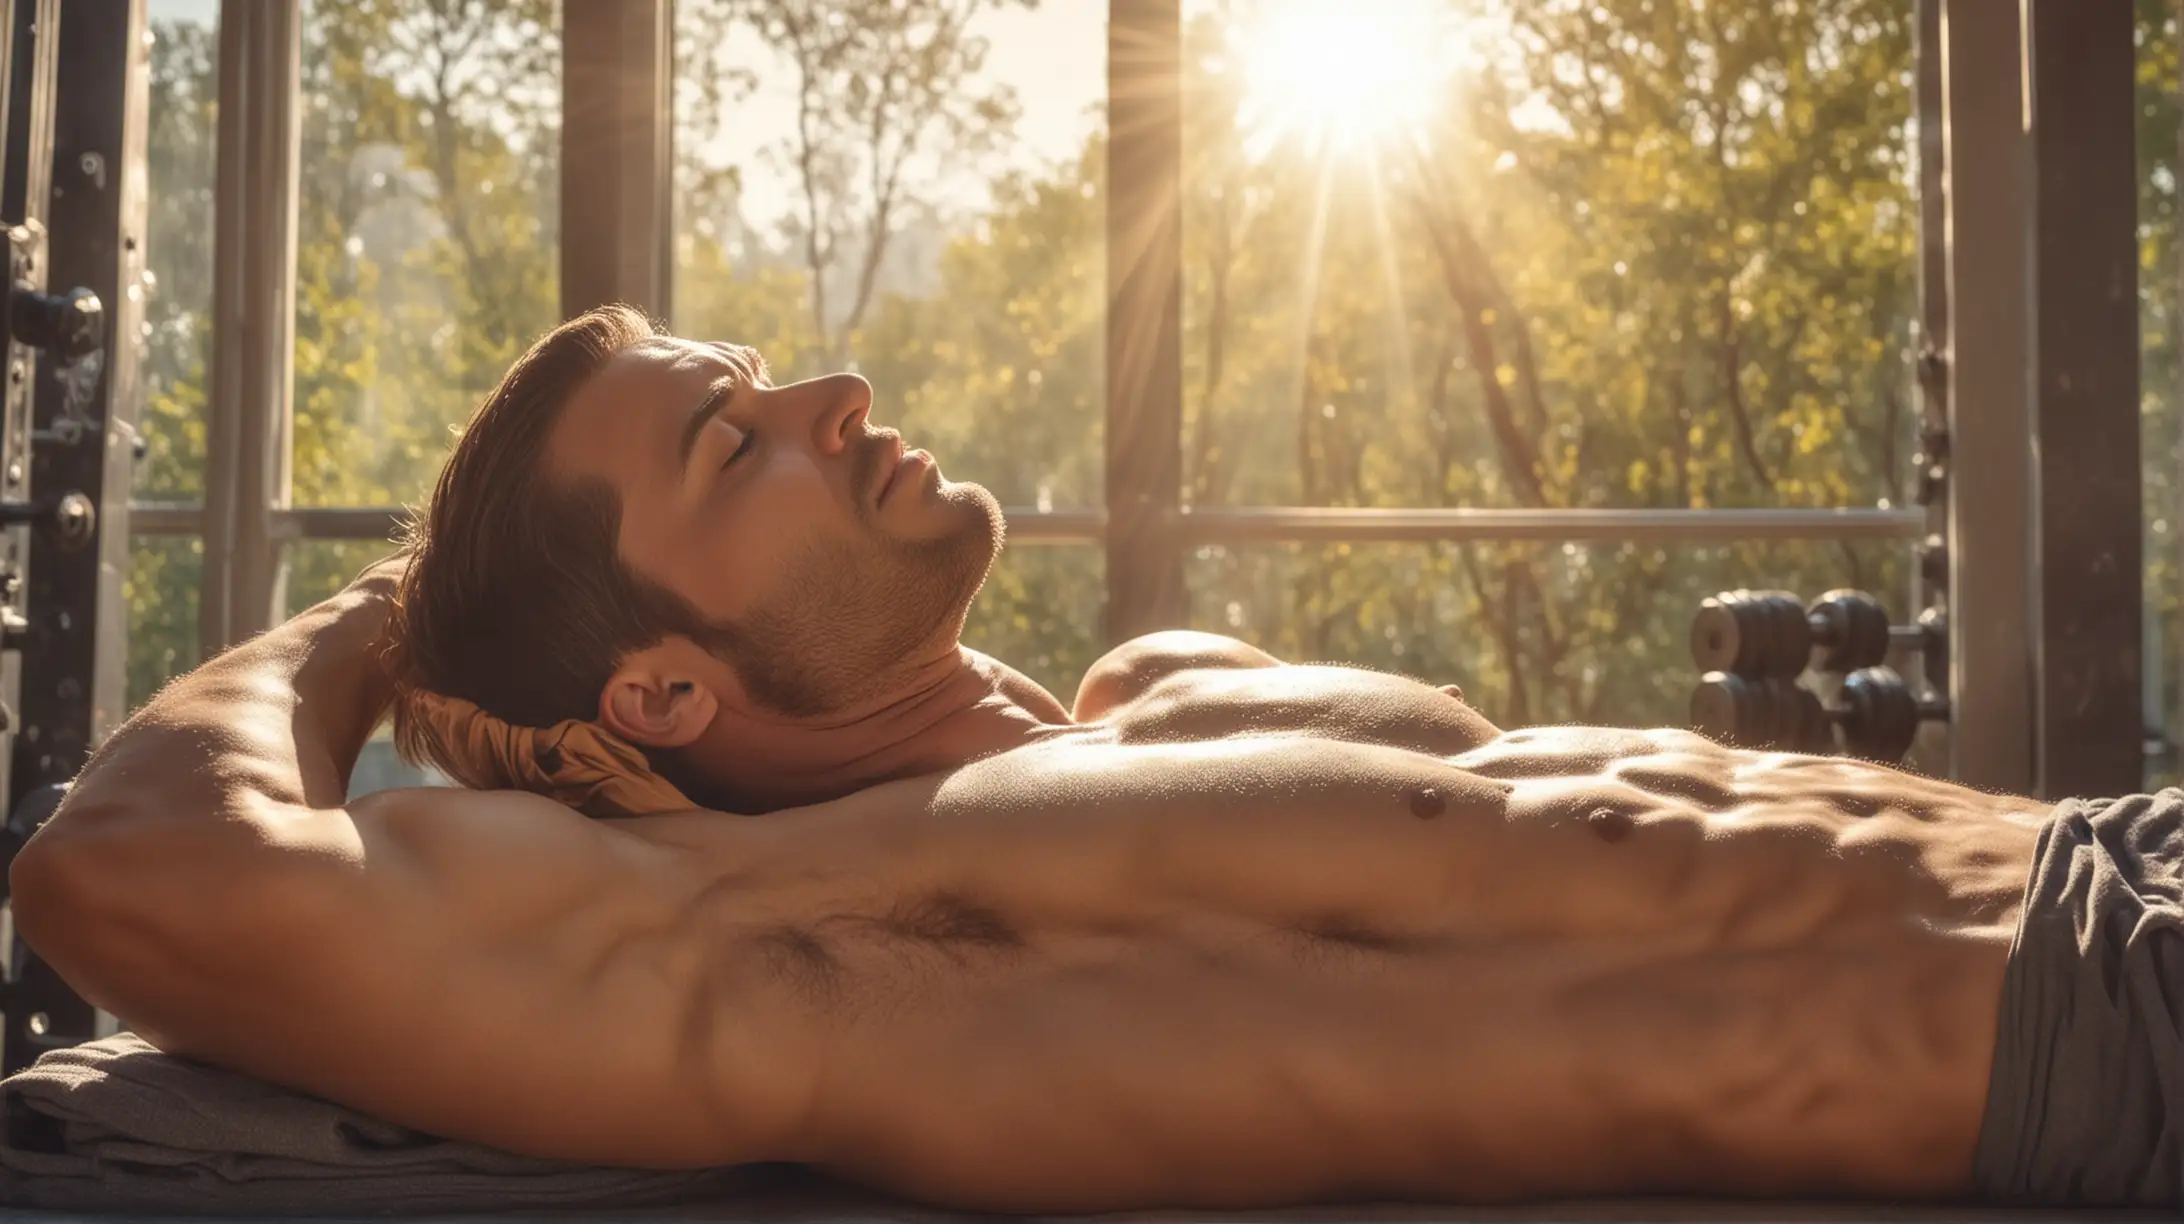 Relaxed Bodybuilder Sleeping in Sunlit Natural Setting 4K HDR Morning Scene